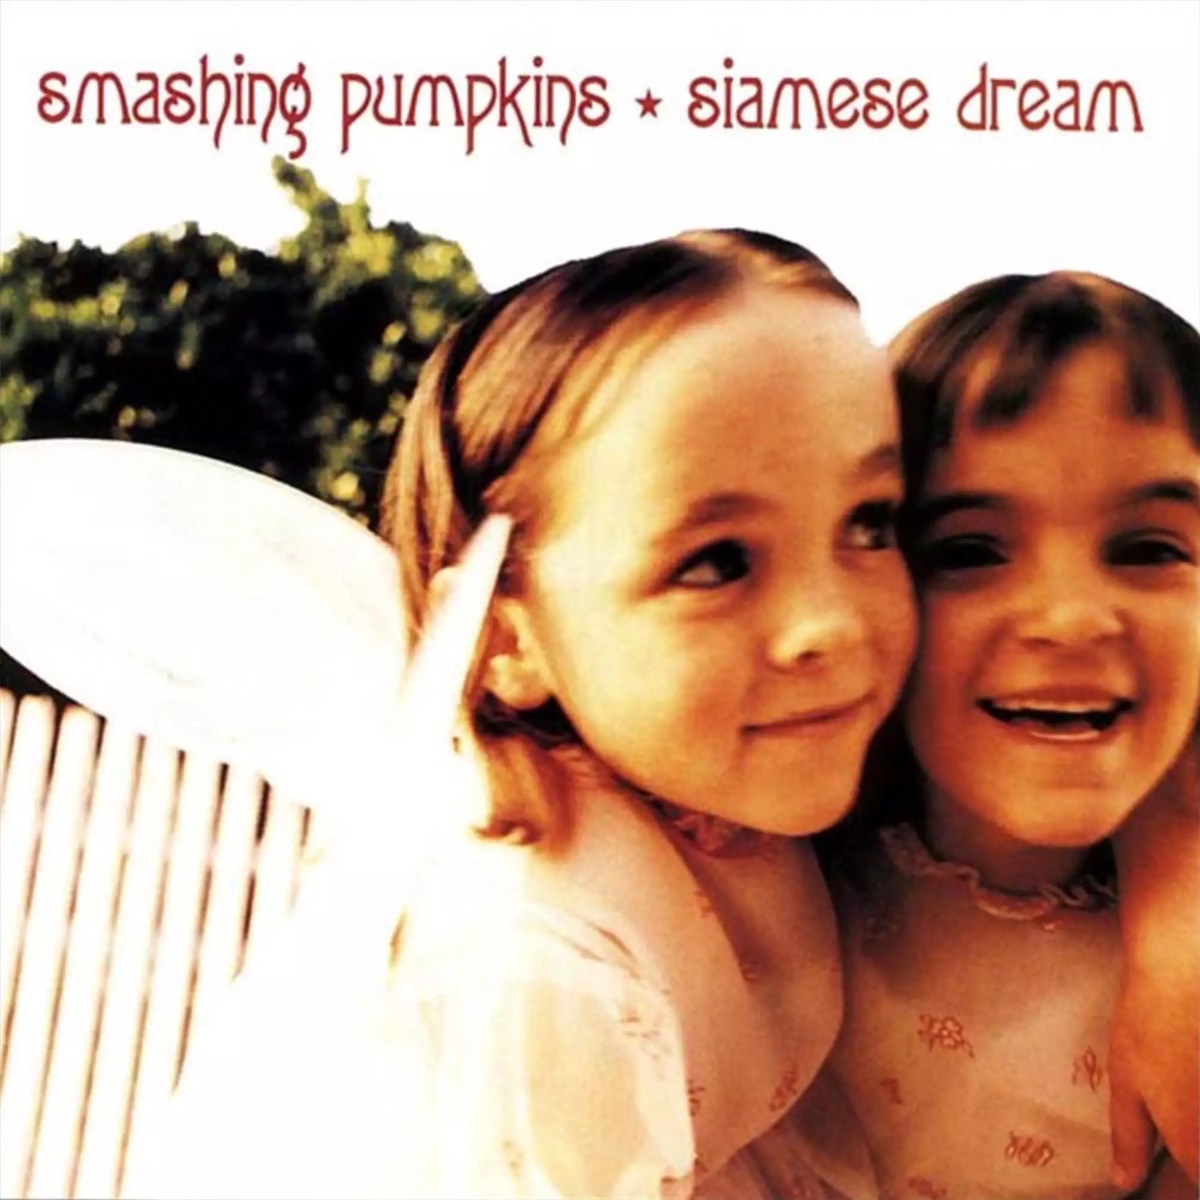 Smashing Pumpkins ‘Siamese Dream’ album artwork